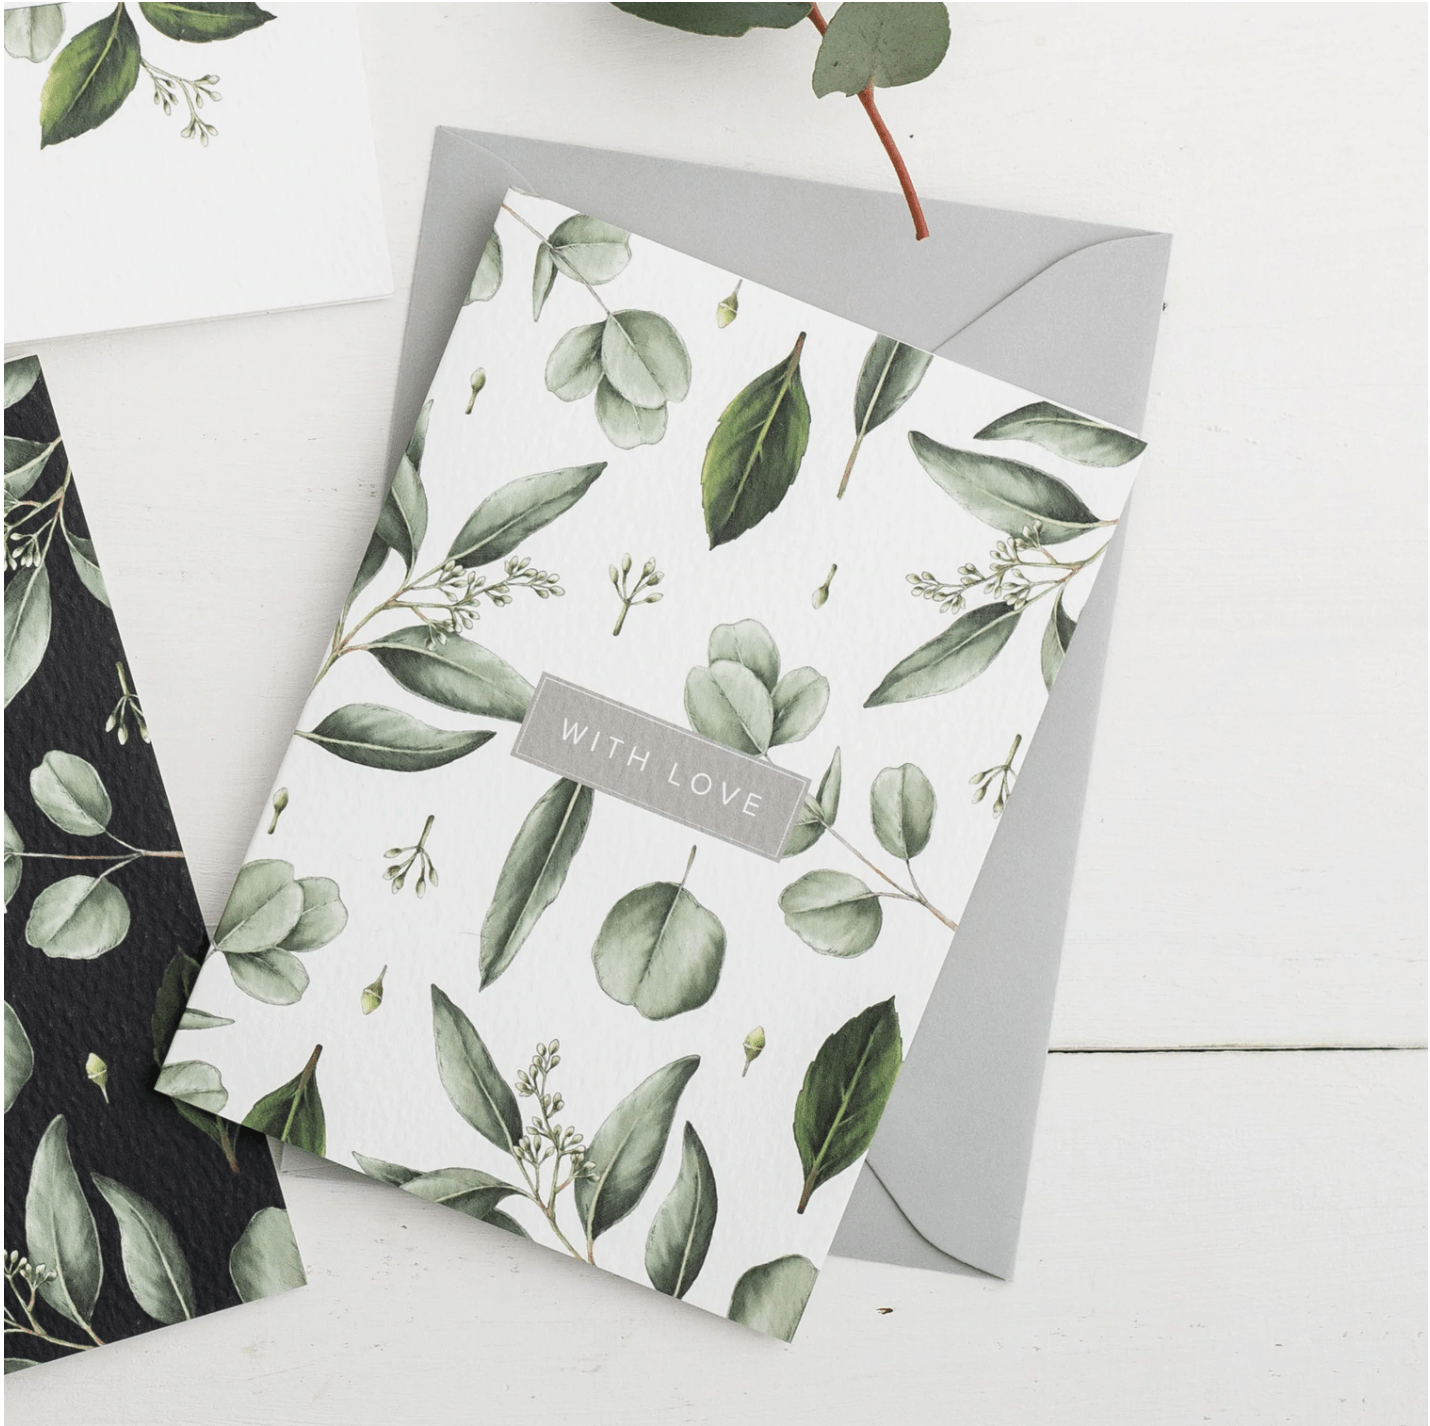 Stylish luxury stationary hand illustrated botanical design greenery with love greetings card Catherine Lewis UK